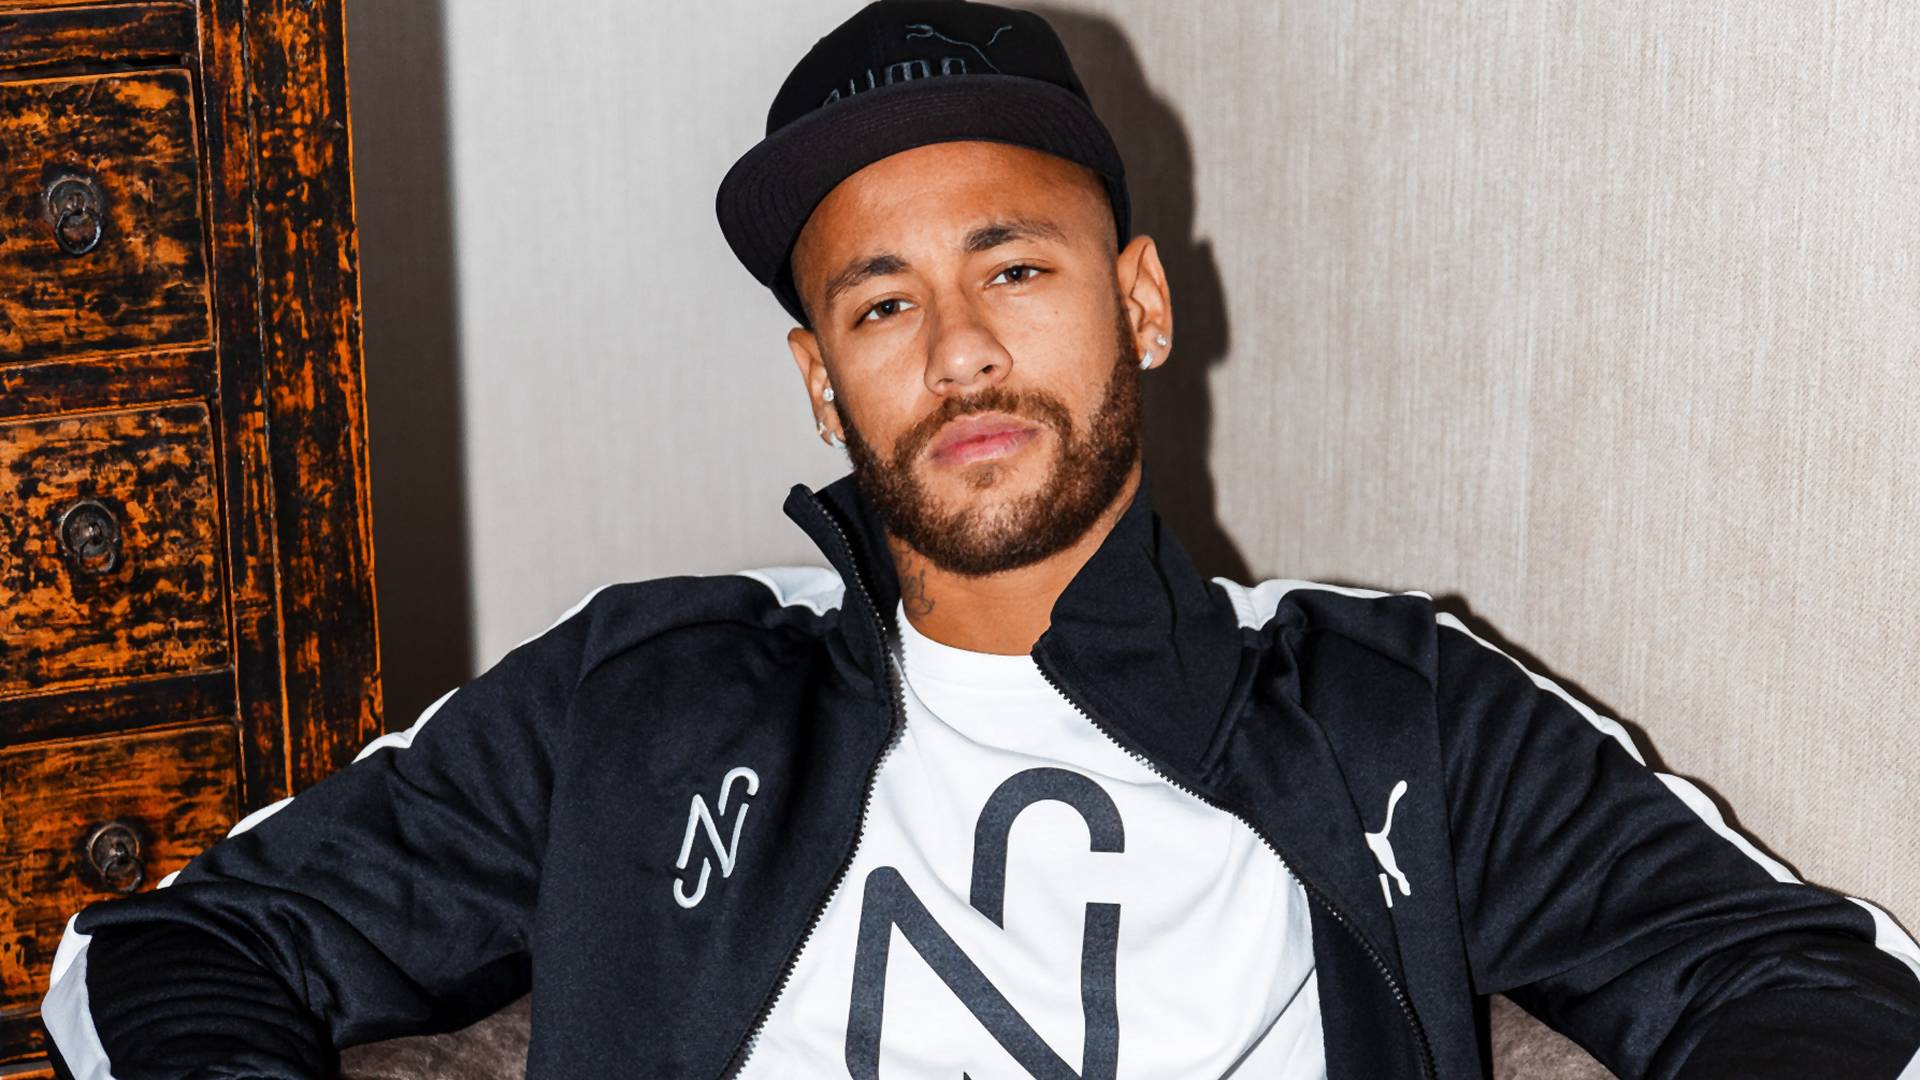 "A király visszatért": Neymar hosszútávú partneri megállapodást írt alá a Pumával